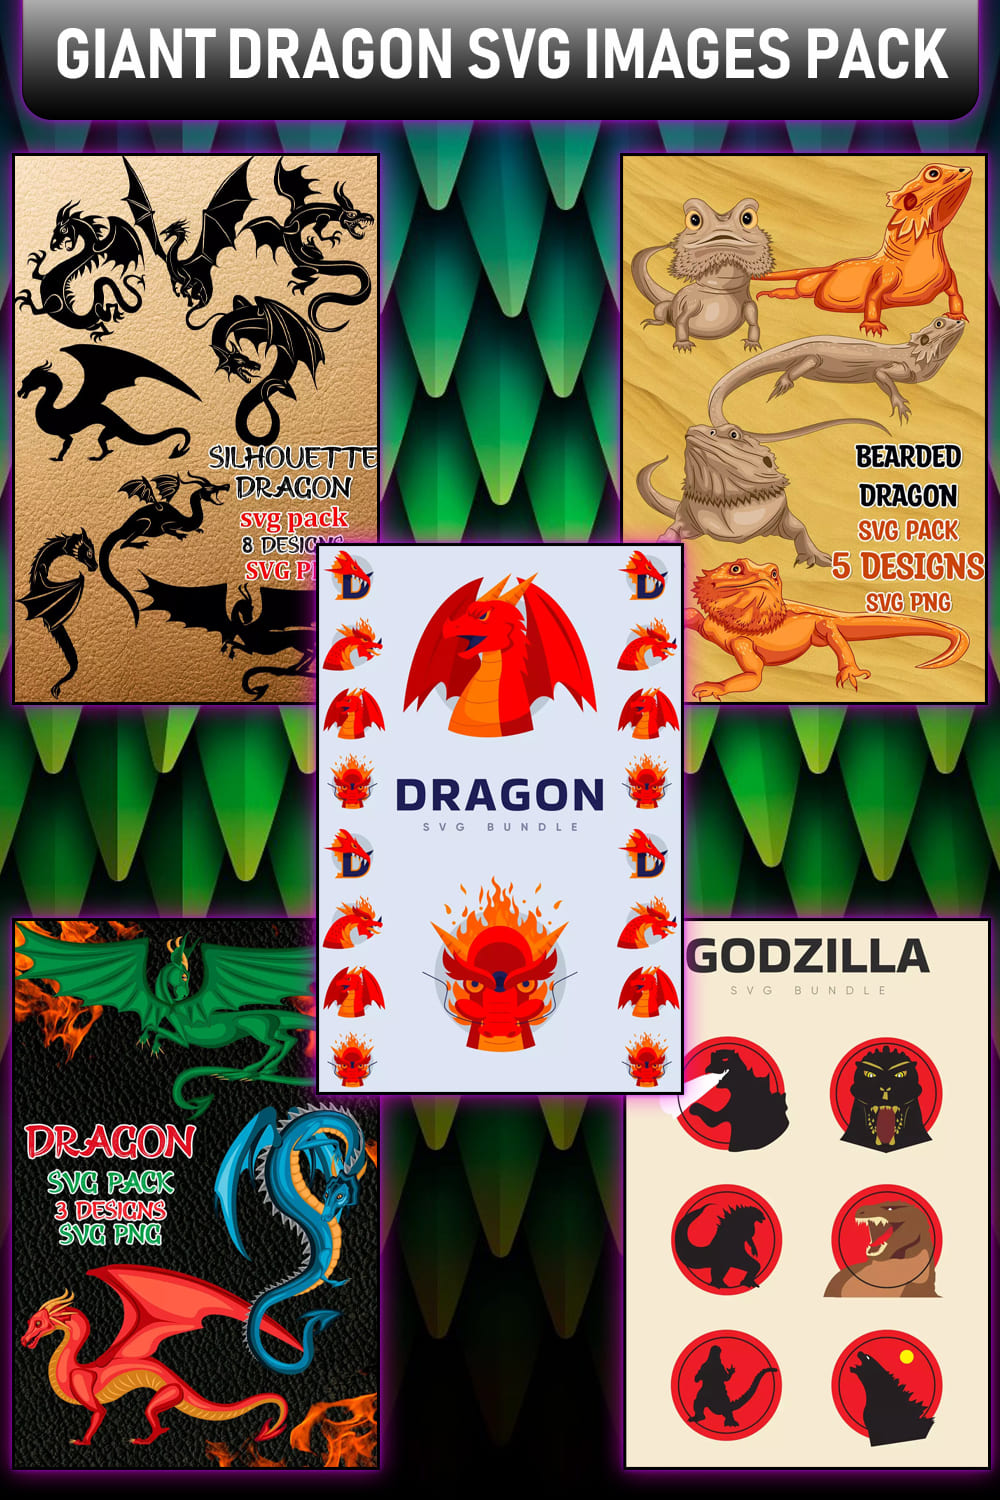 Giant Dragon SVG Design Images Pack Pinterest image.